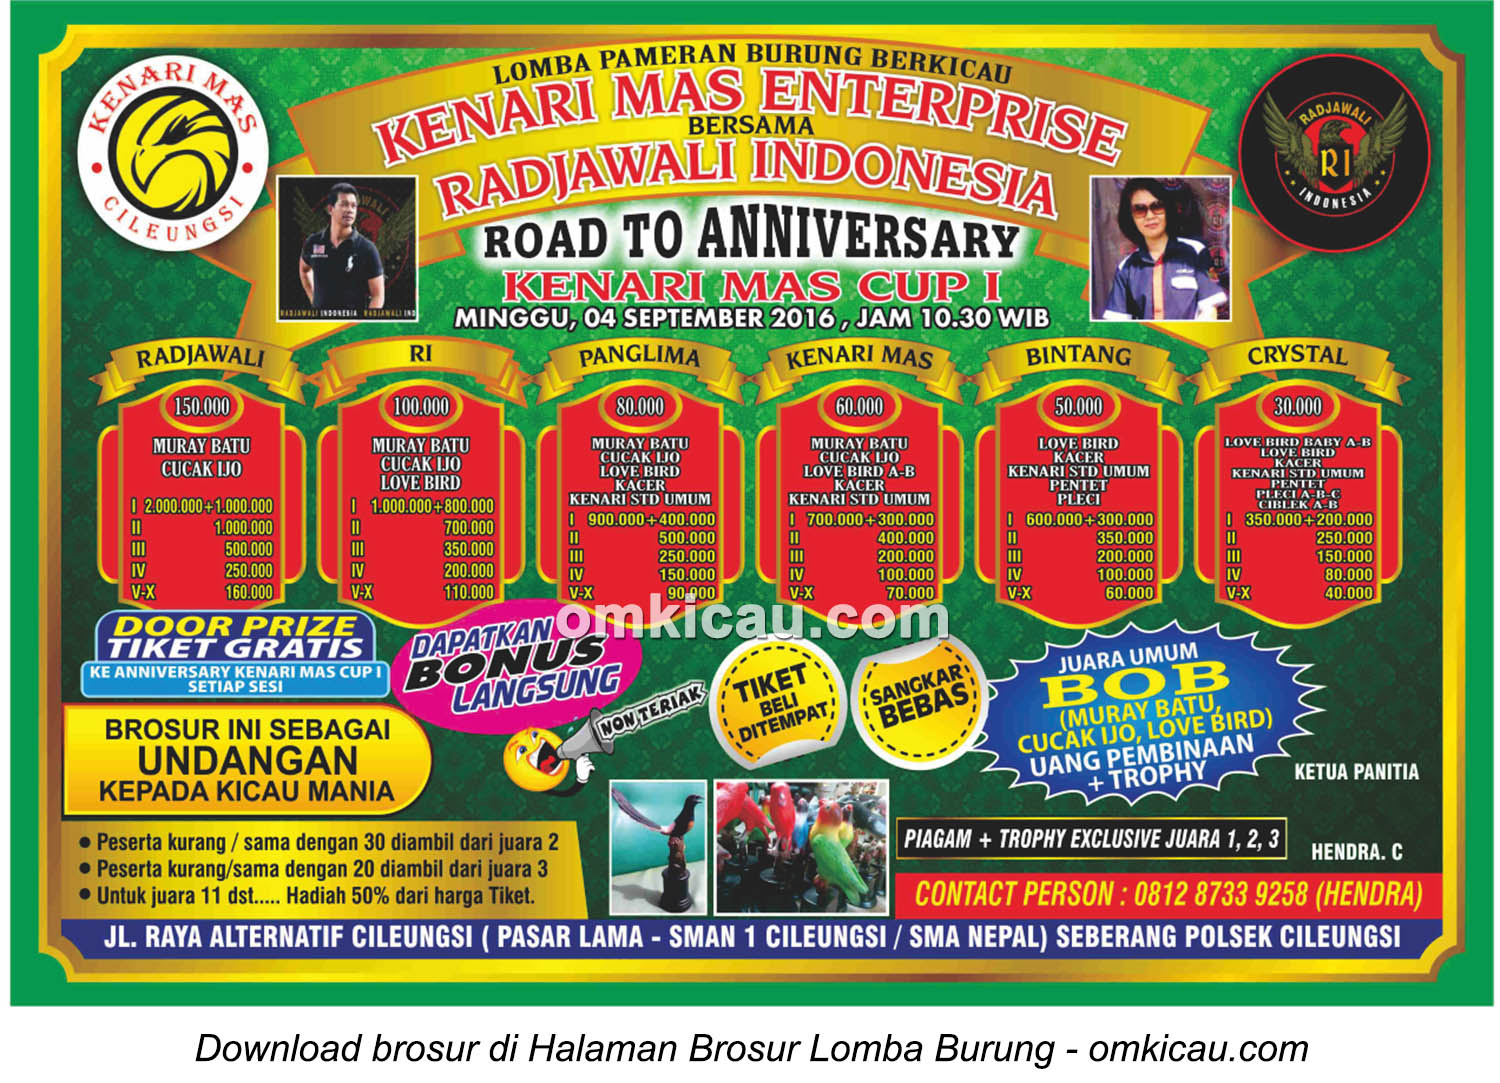 Brosur Lomba Burung Berkicau Road to Anniversary Kenari Mas Cup I, Cileungsi, 4 September 2016